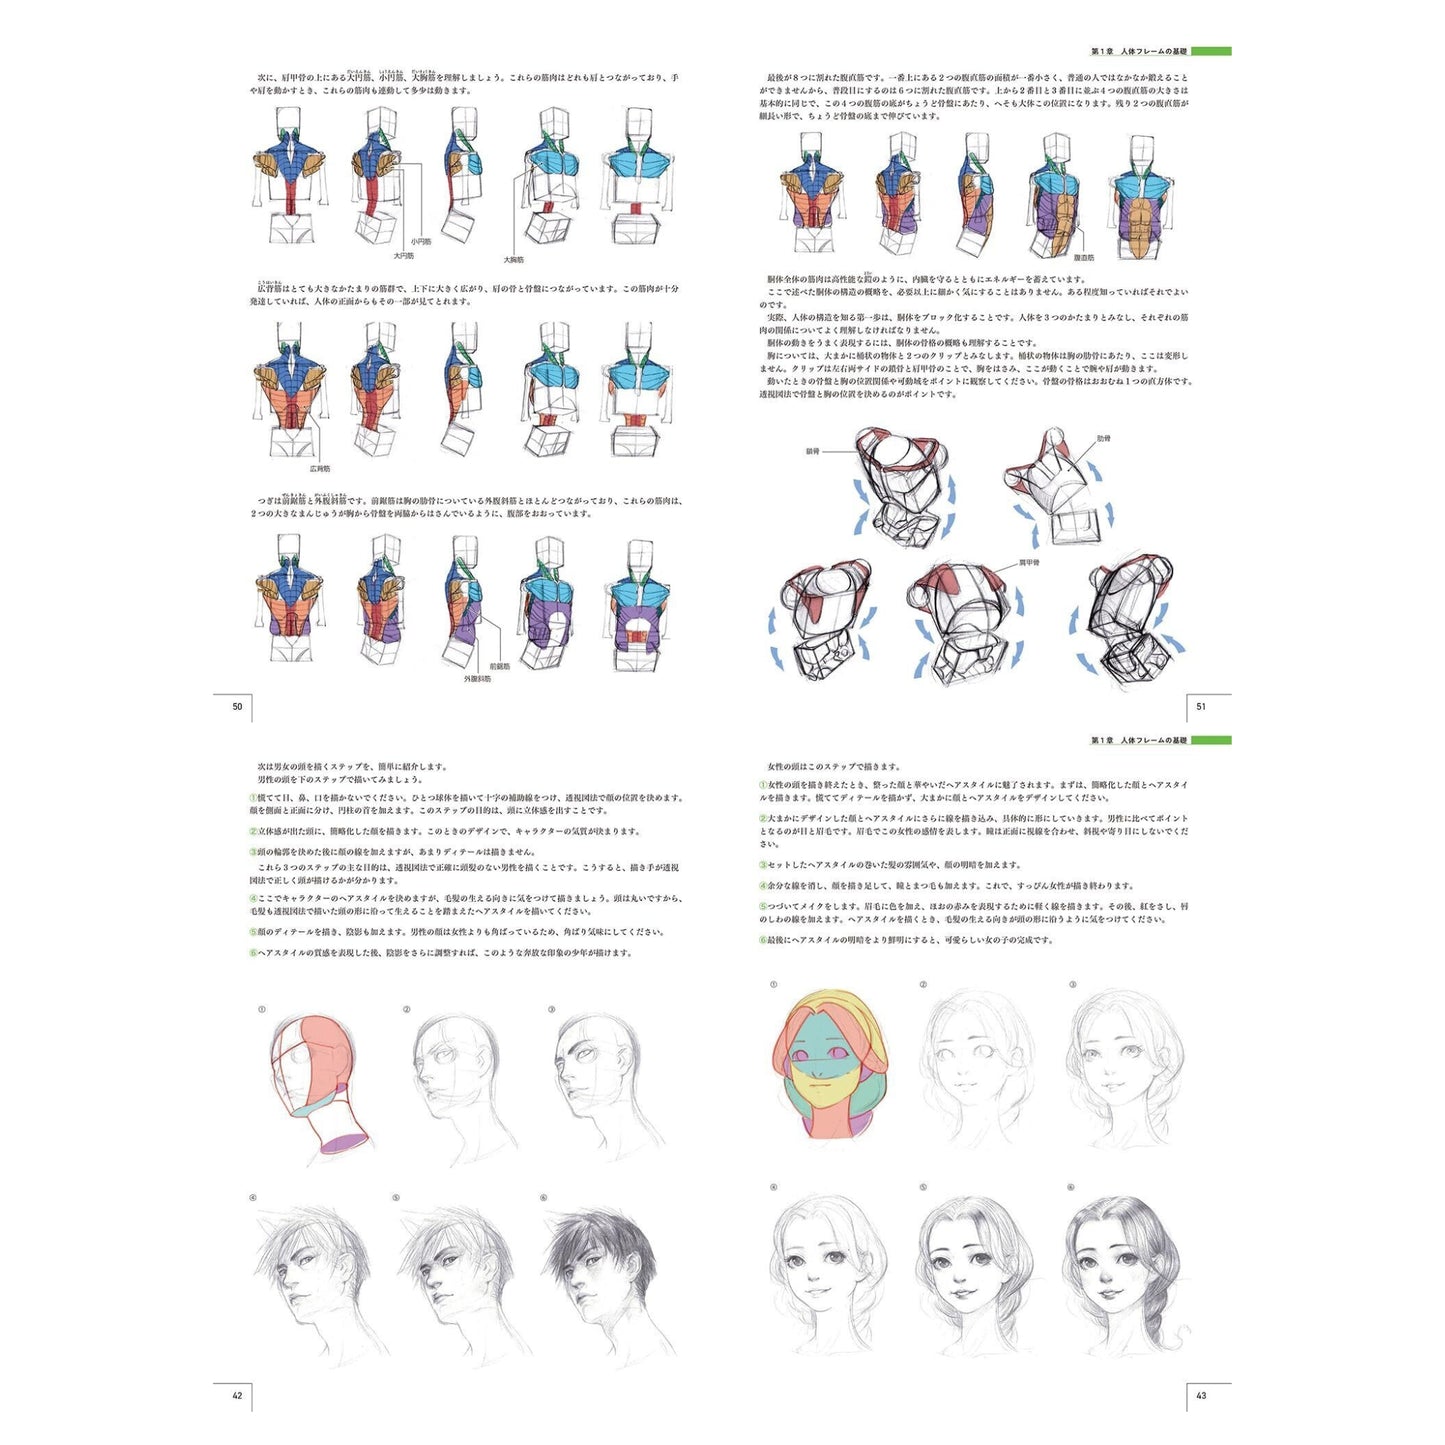 How to draw - jap. Zeichenbuch - Master Guide - vom menschlichen Körper bis zur Charaktererstellung